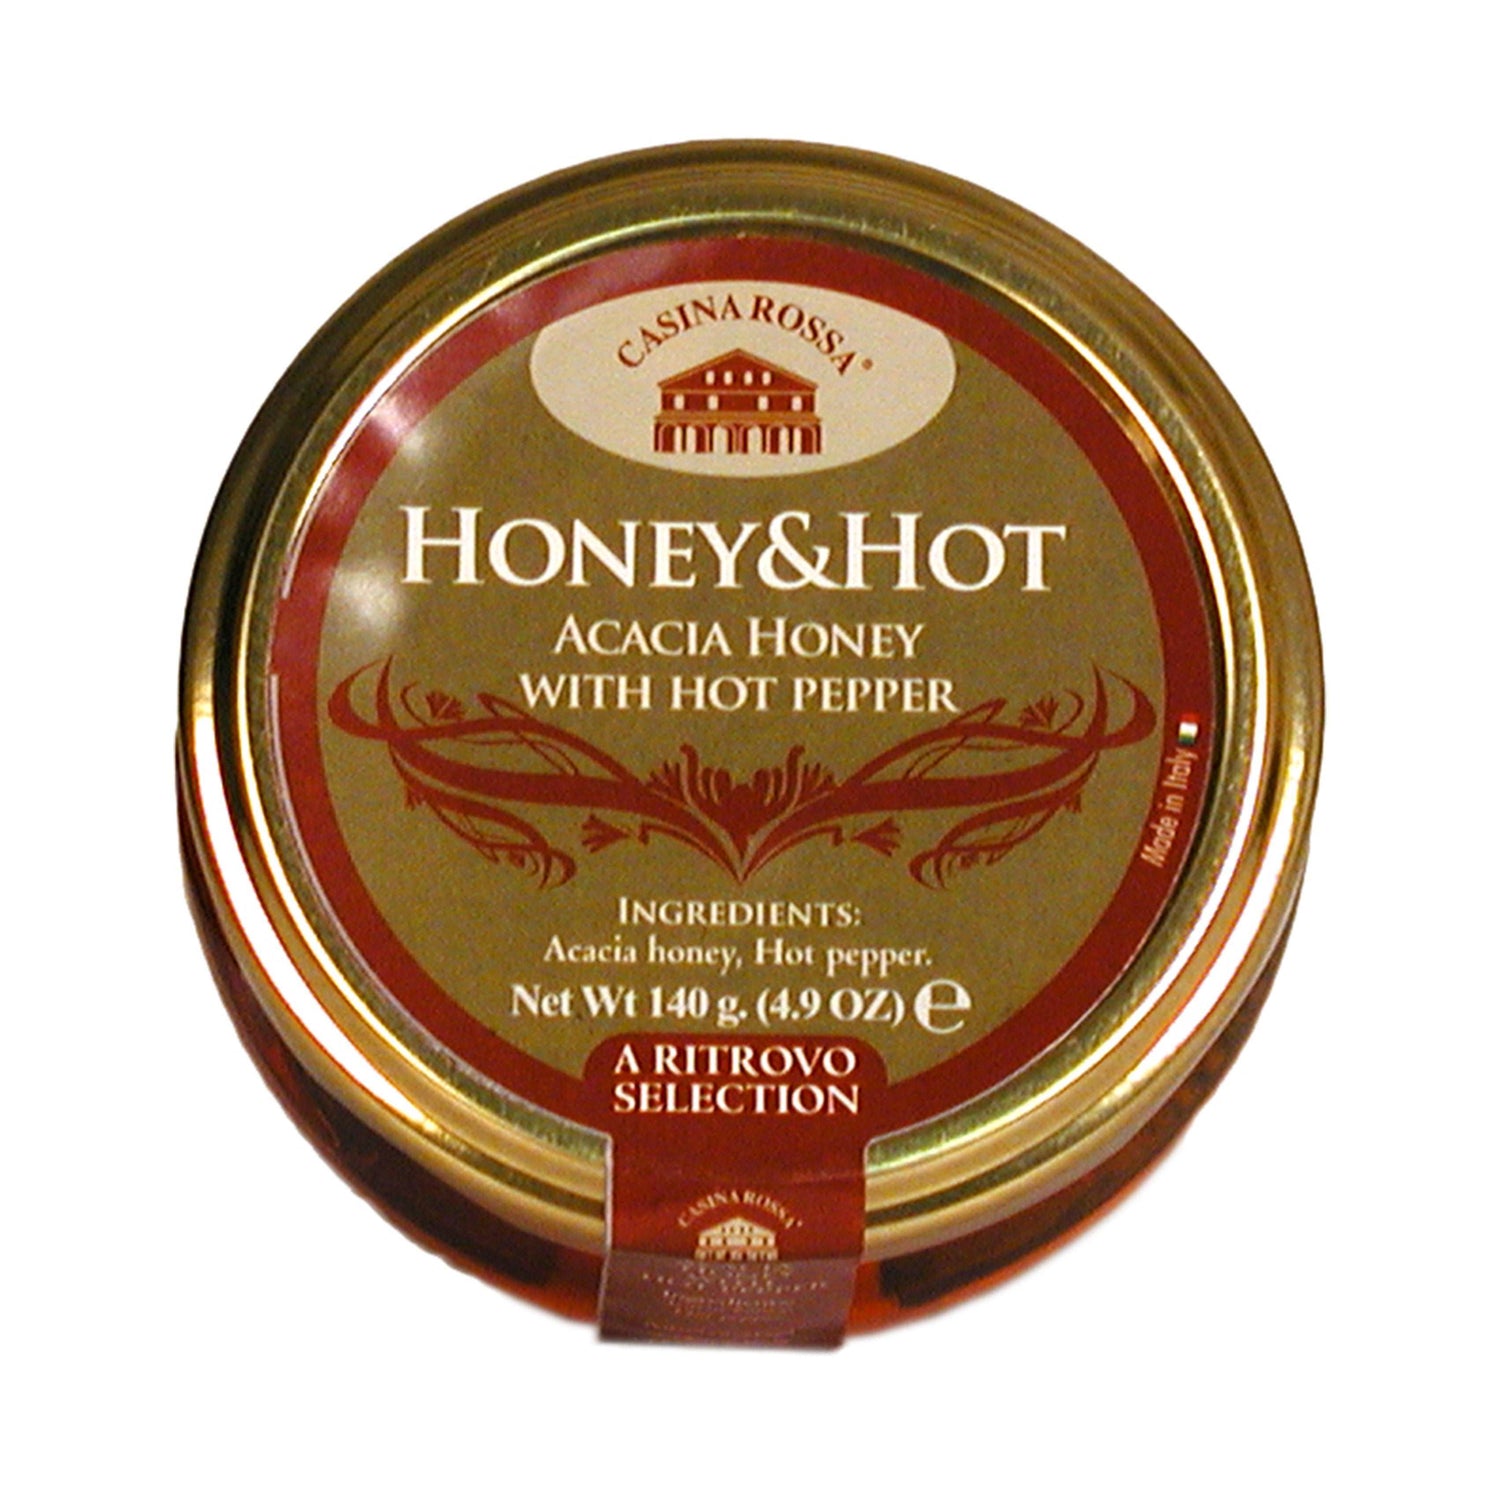 Casina Rossa Honey & Hot - Acacia Honey with Hot Pepper